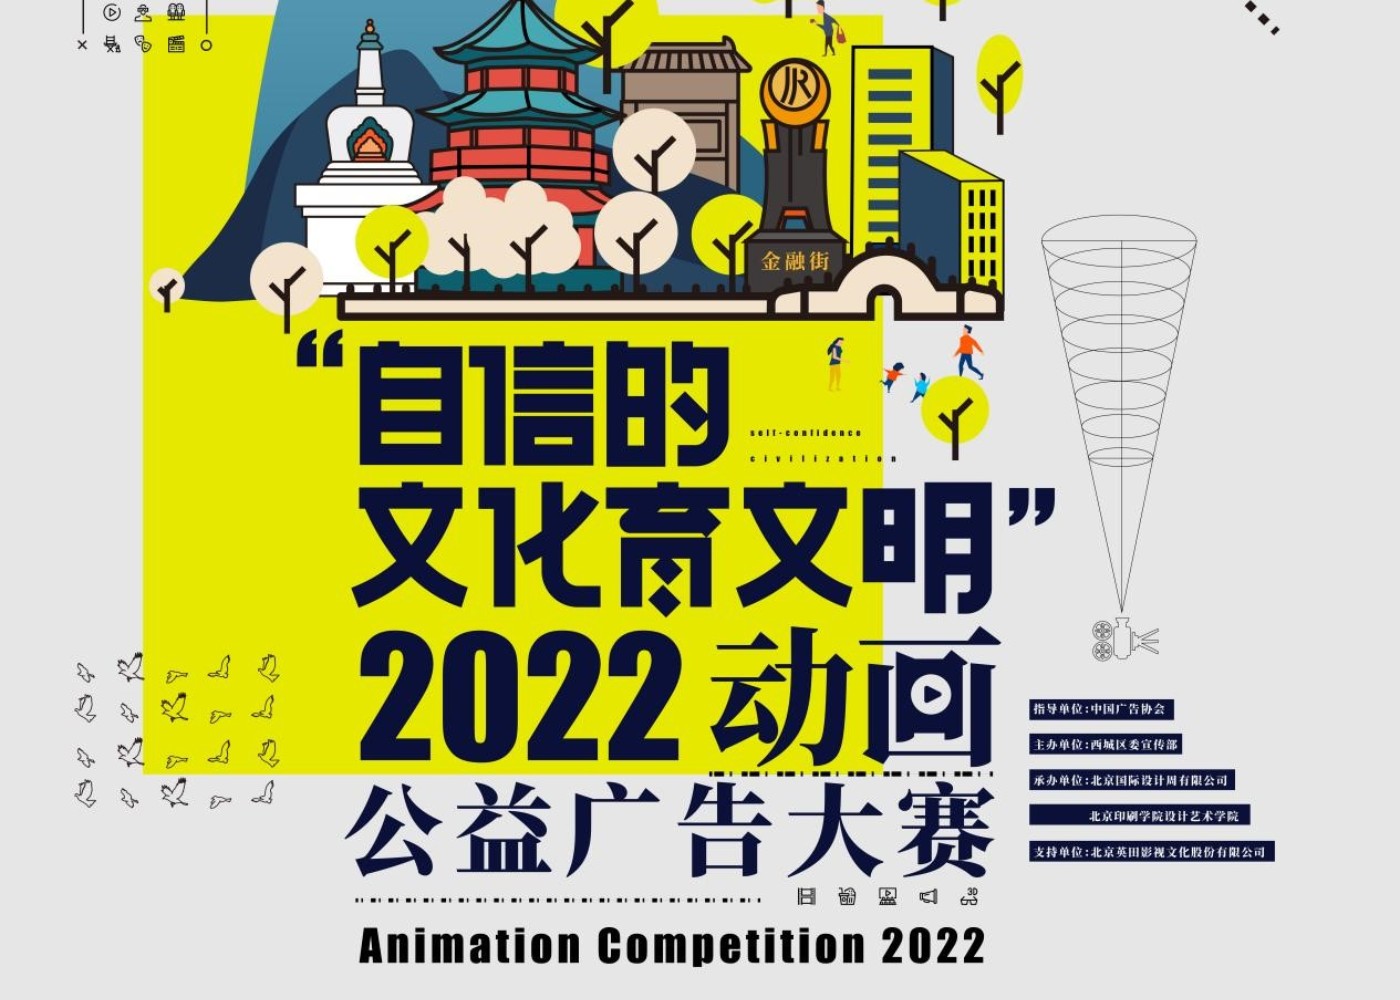 “自信的文化育文明” 2022年动画公益广告大赛